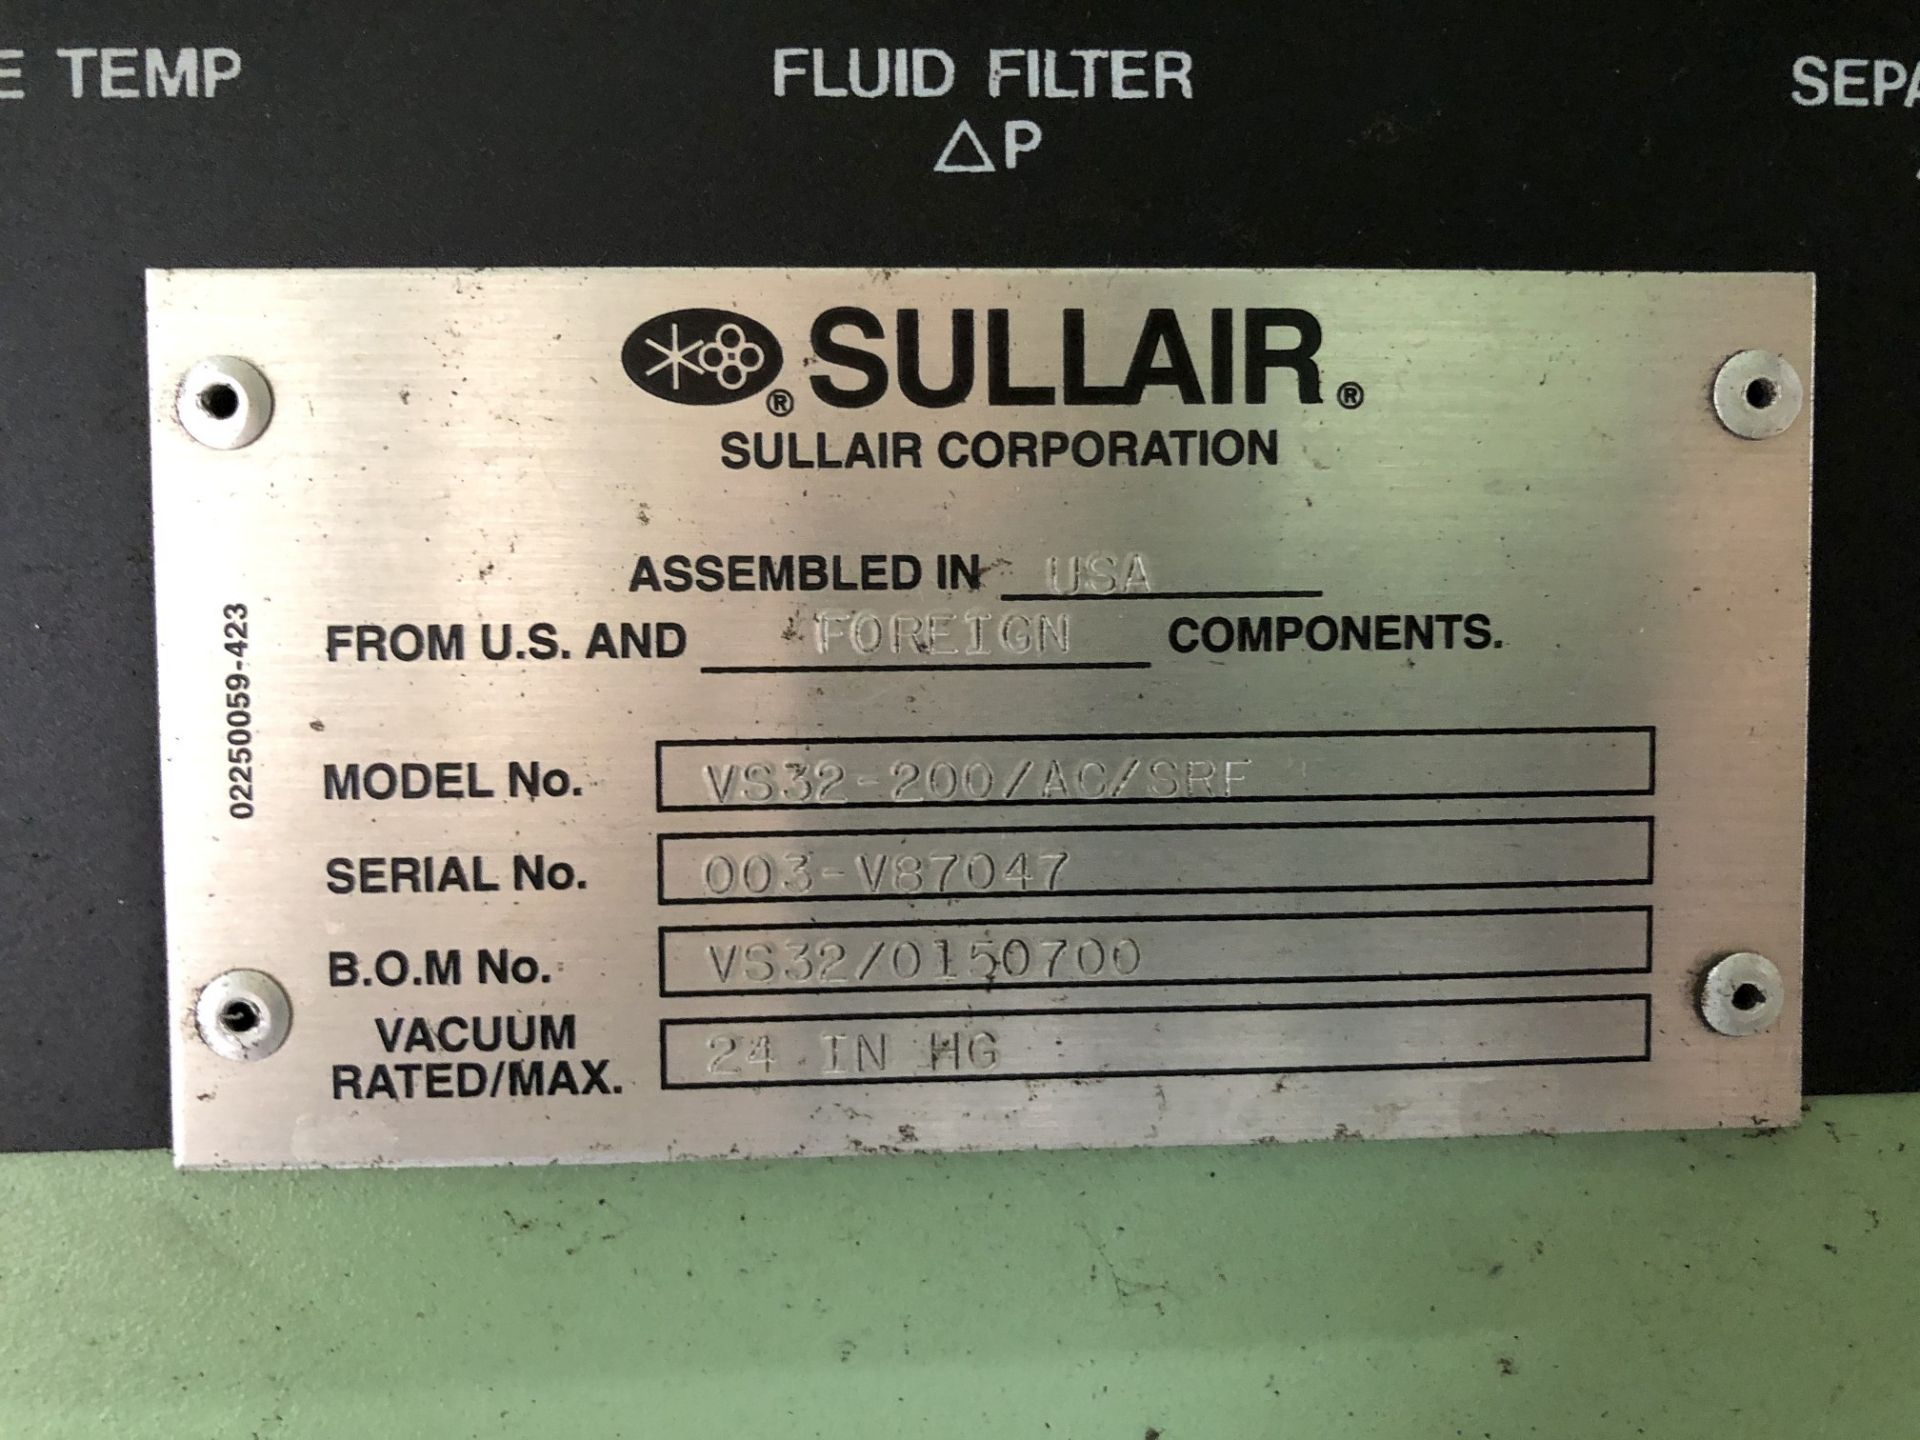 Sullair 200 HP Vacuum Pump, Model VS32-200/AC/SRF, Meter Read 92,727 Hours on 12/17/2019, S/N 003- - Image 5 of 5